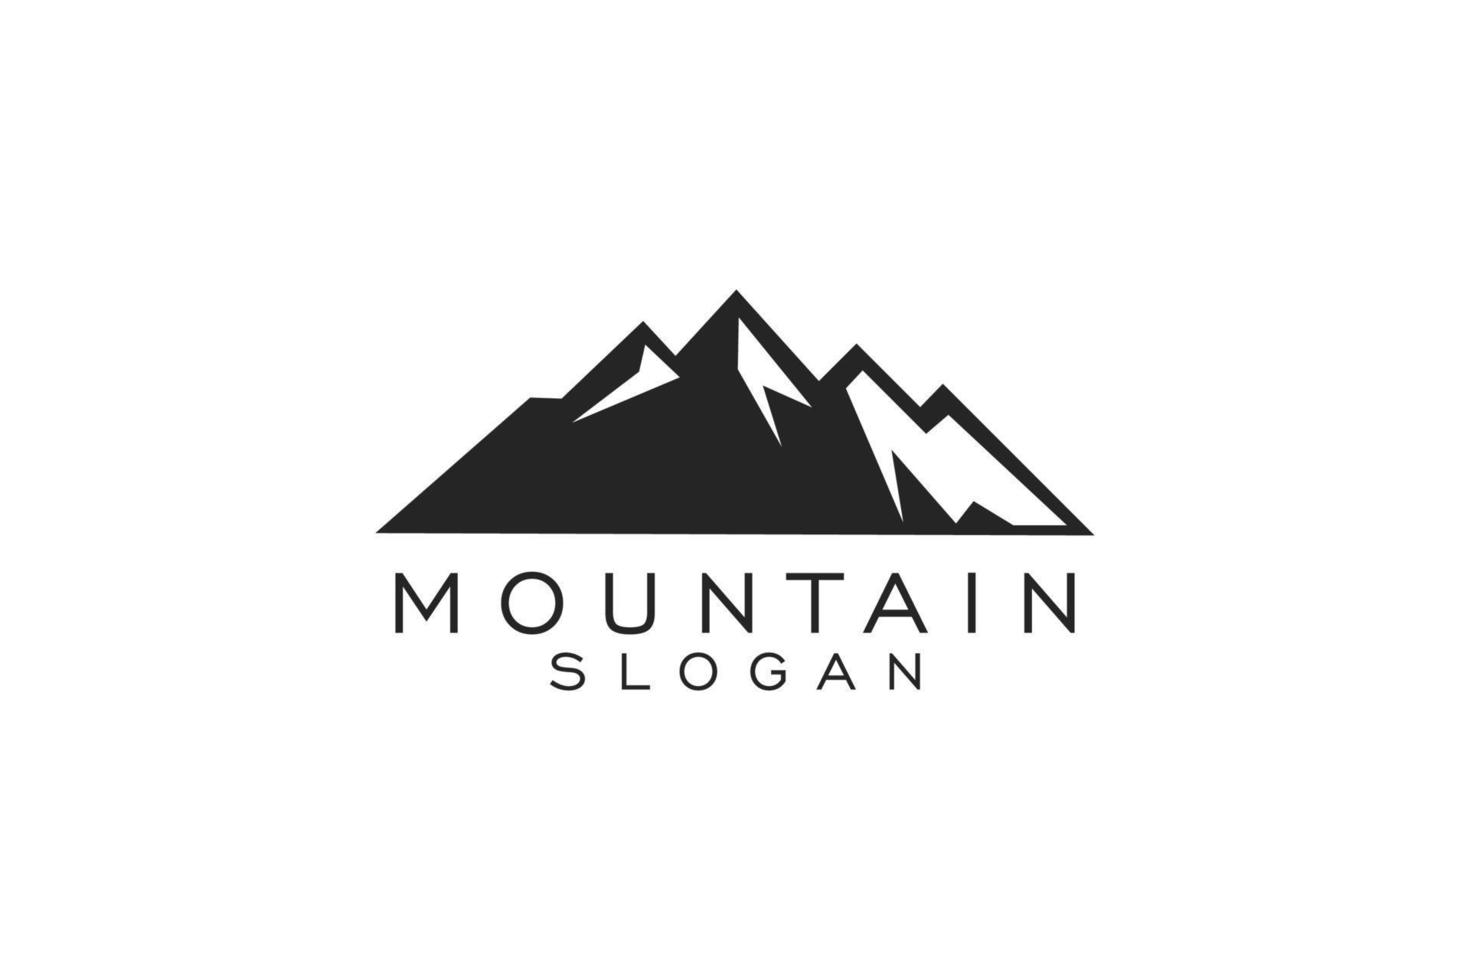 Mountain, travel, adventure hipster logo design inspiration vector